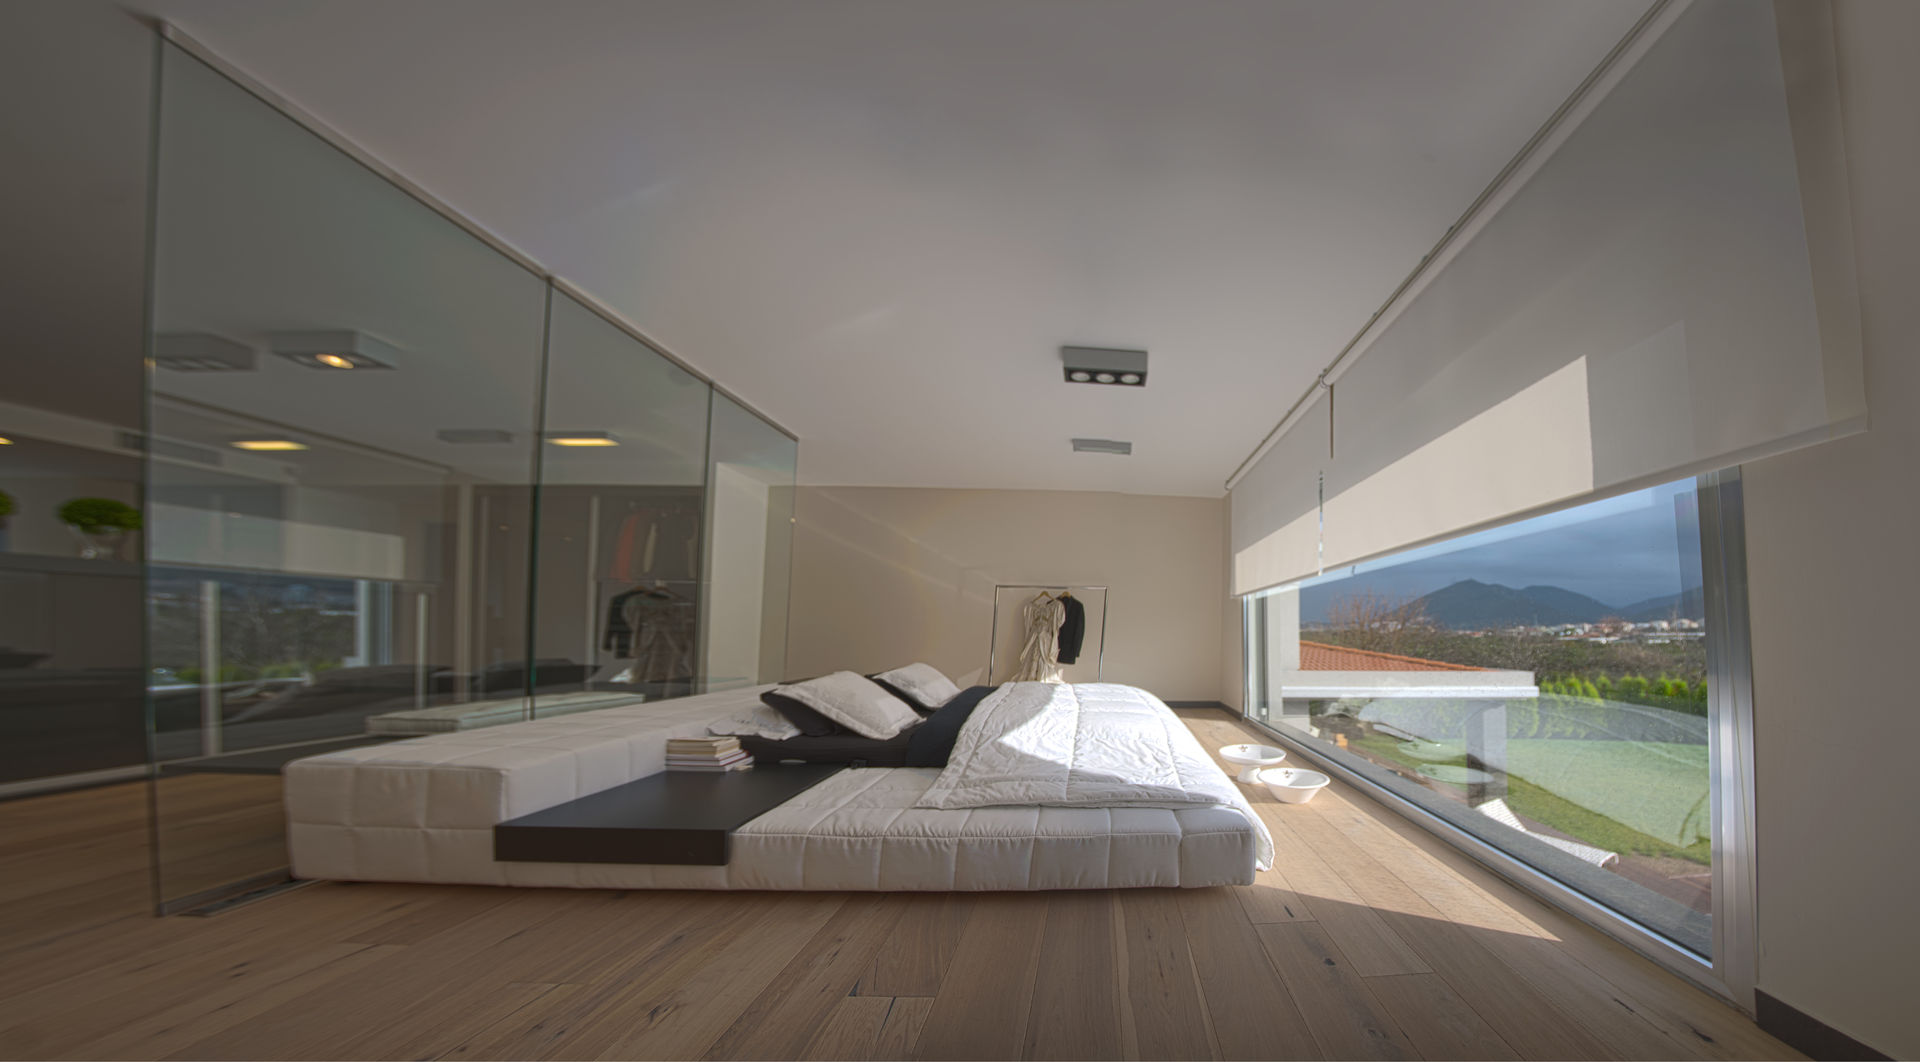 SAHİLEVLERİ PROJE, As Tasarım - Mimarlık As Tasarım - Mimarlık Modern style bedroom Beds & headboards